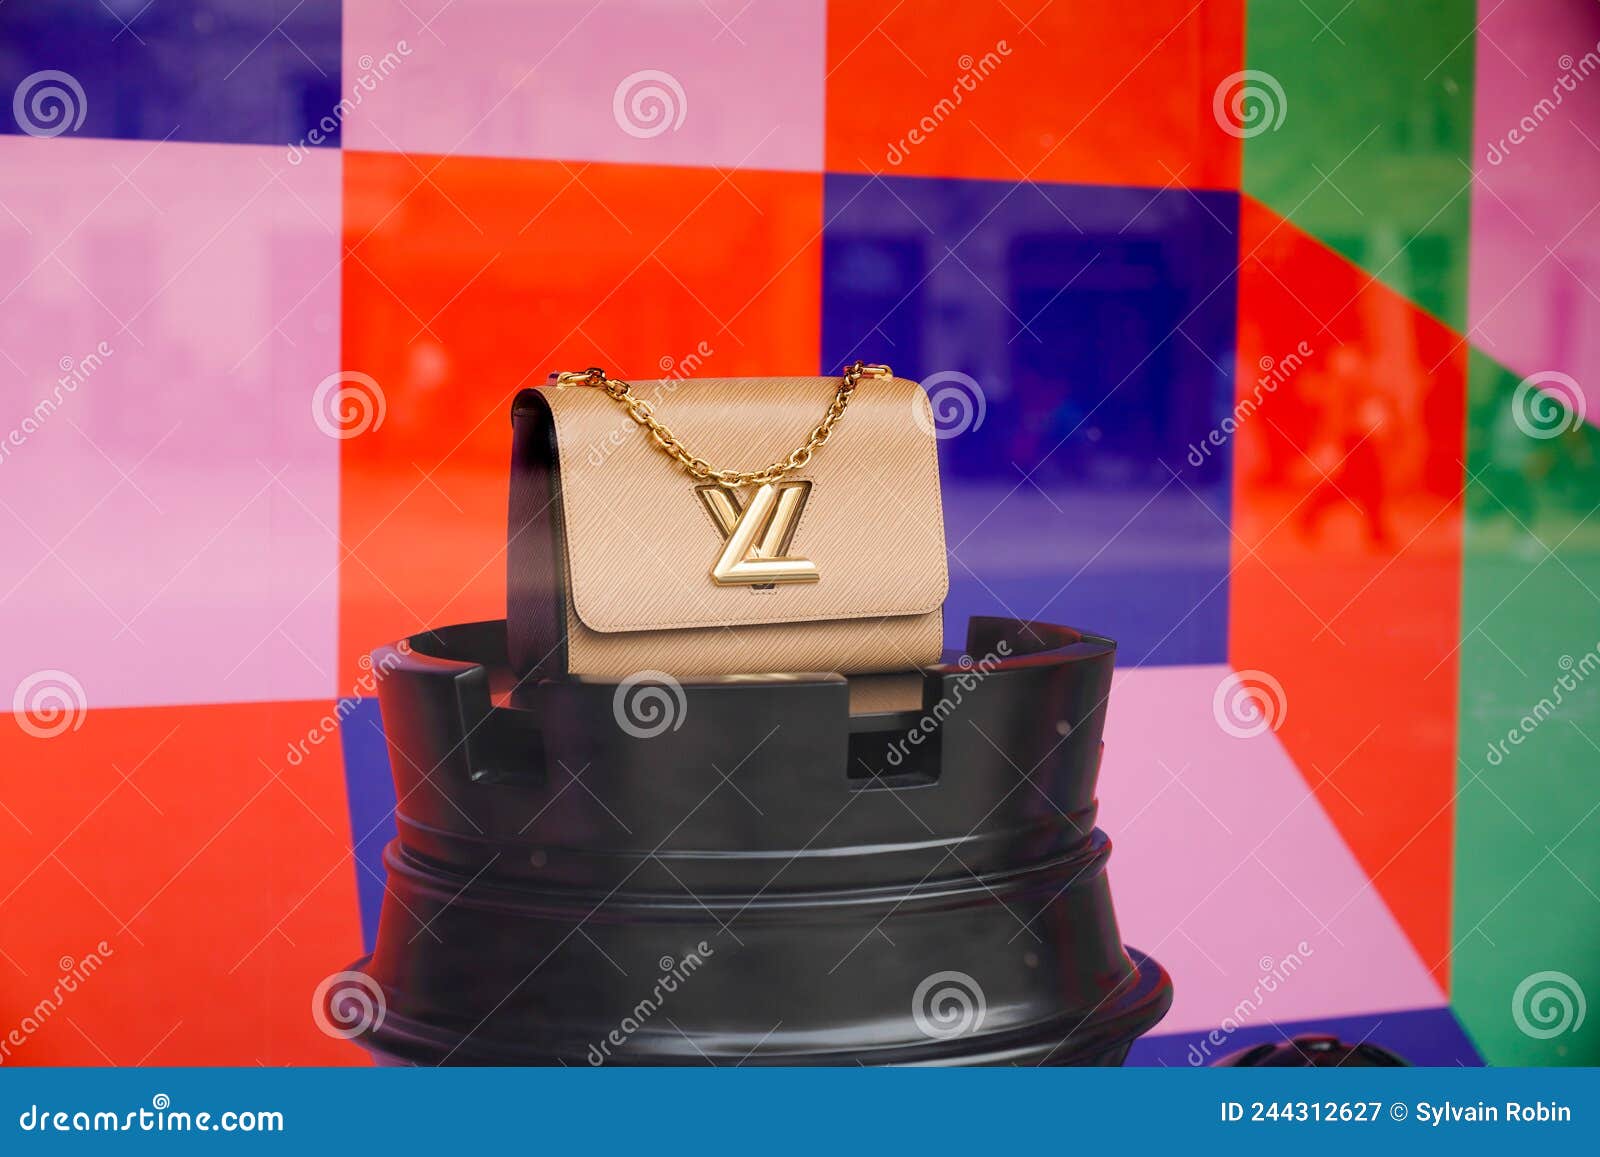 Louis Vuitton Makeup Travel Bag Photos, Download The BEST Free Louis Vuitton  Makeup Travel Bag Stock Photos & HD Images